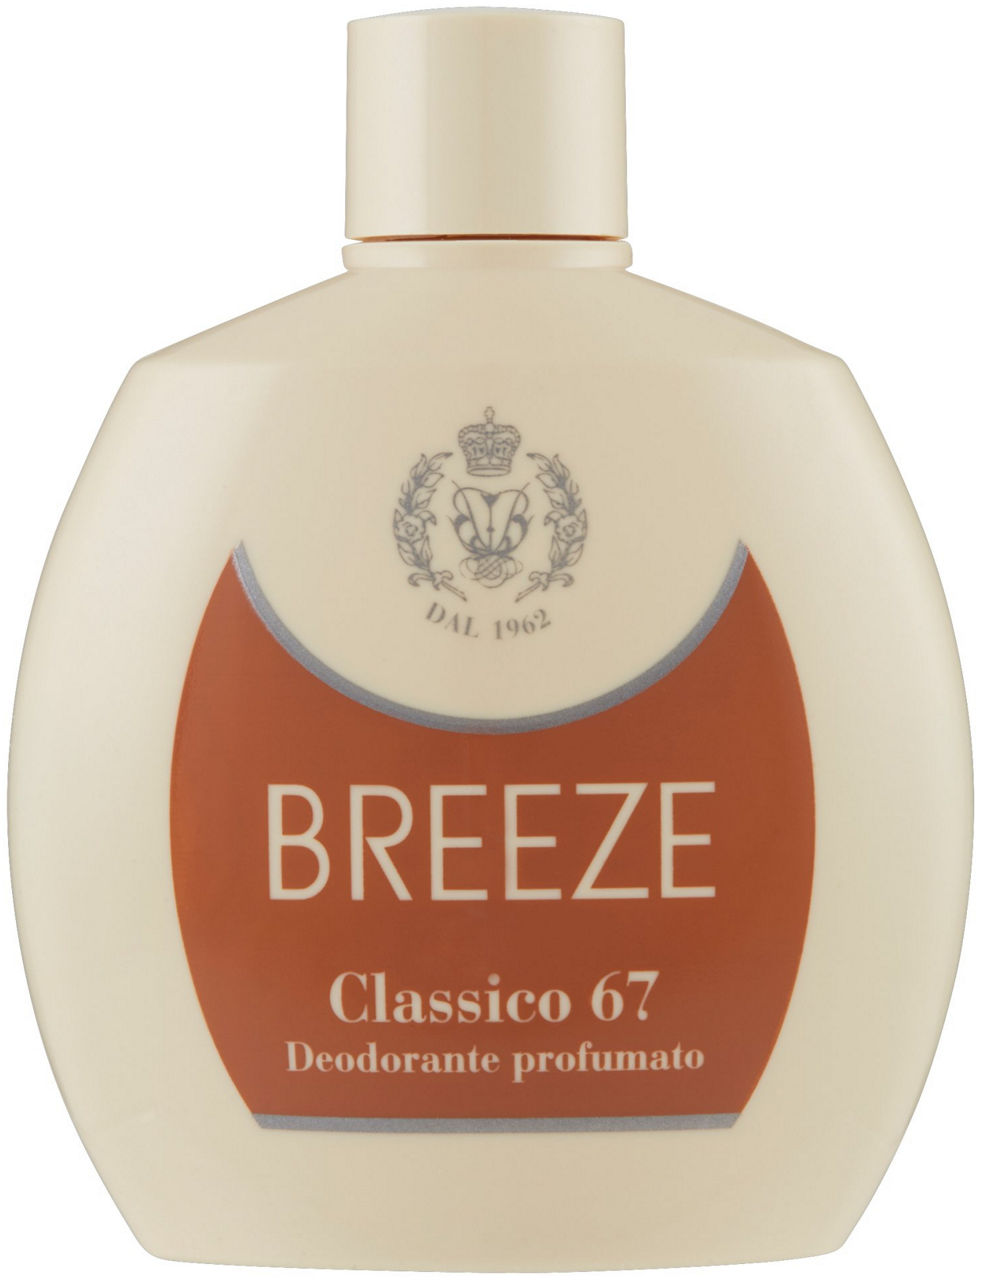 Deodorante breeze squeeze 67 avorio flacone ml 100